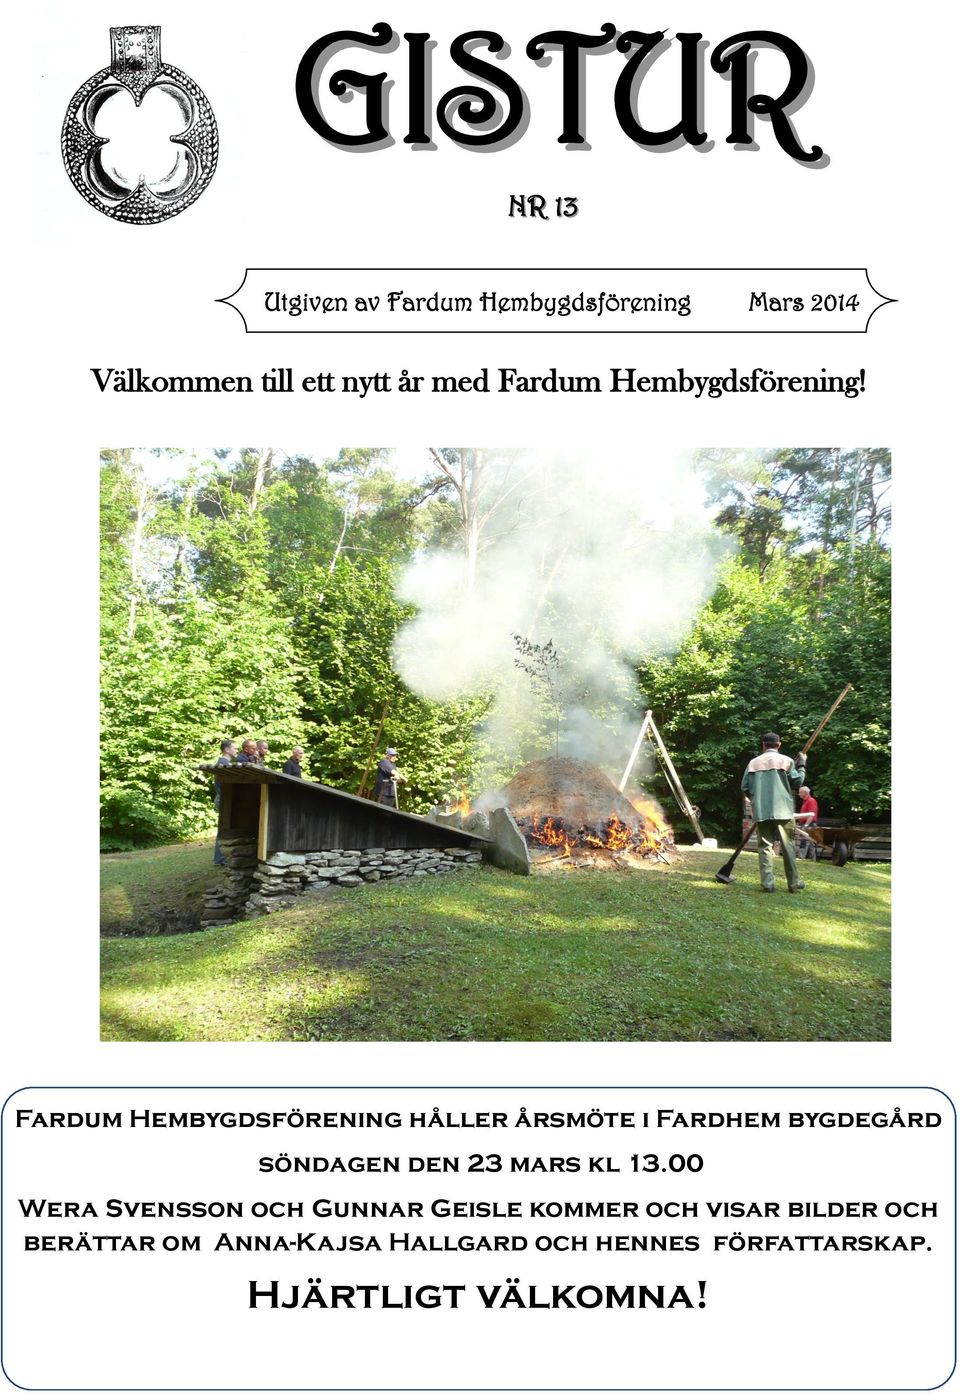 Fardum Hembygdsförening håller årsmöte i Fardhem bygdegård söndagen den 23 mars kl